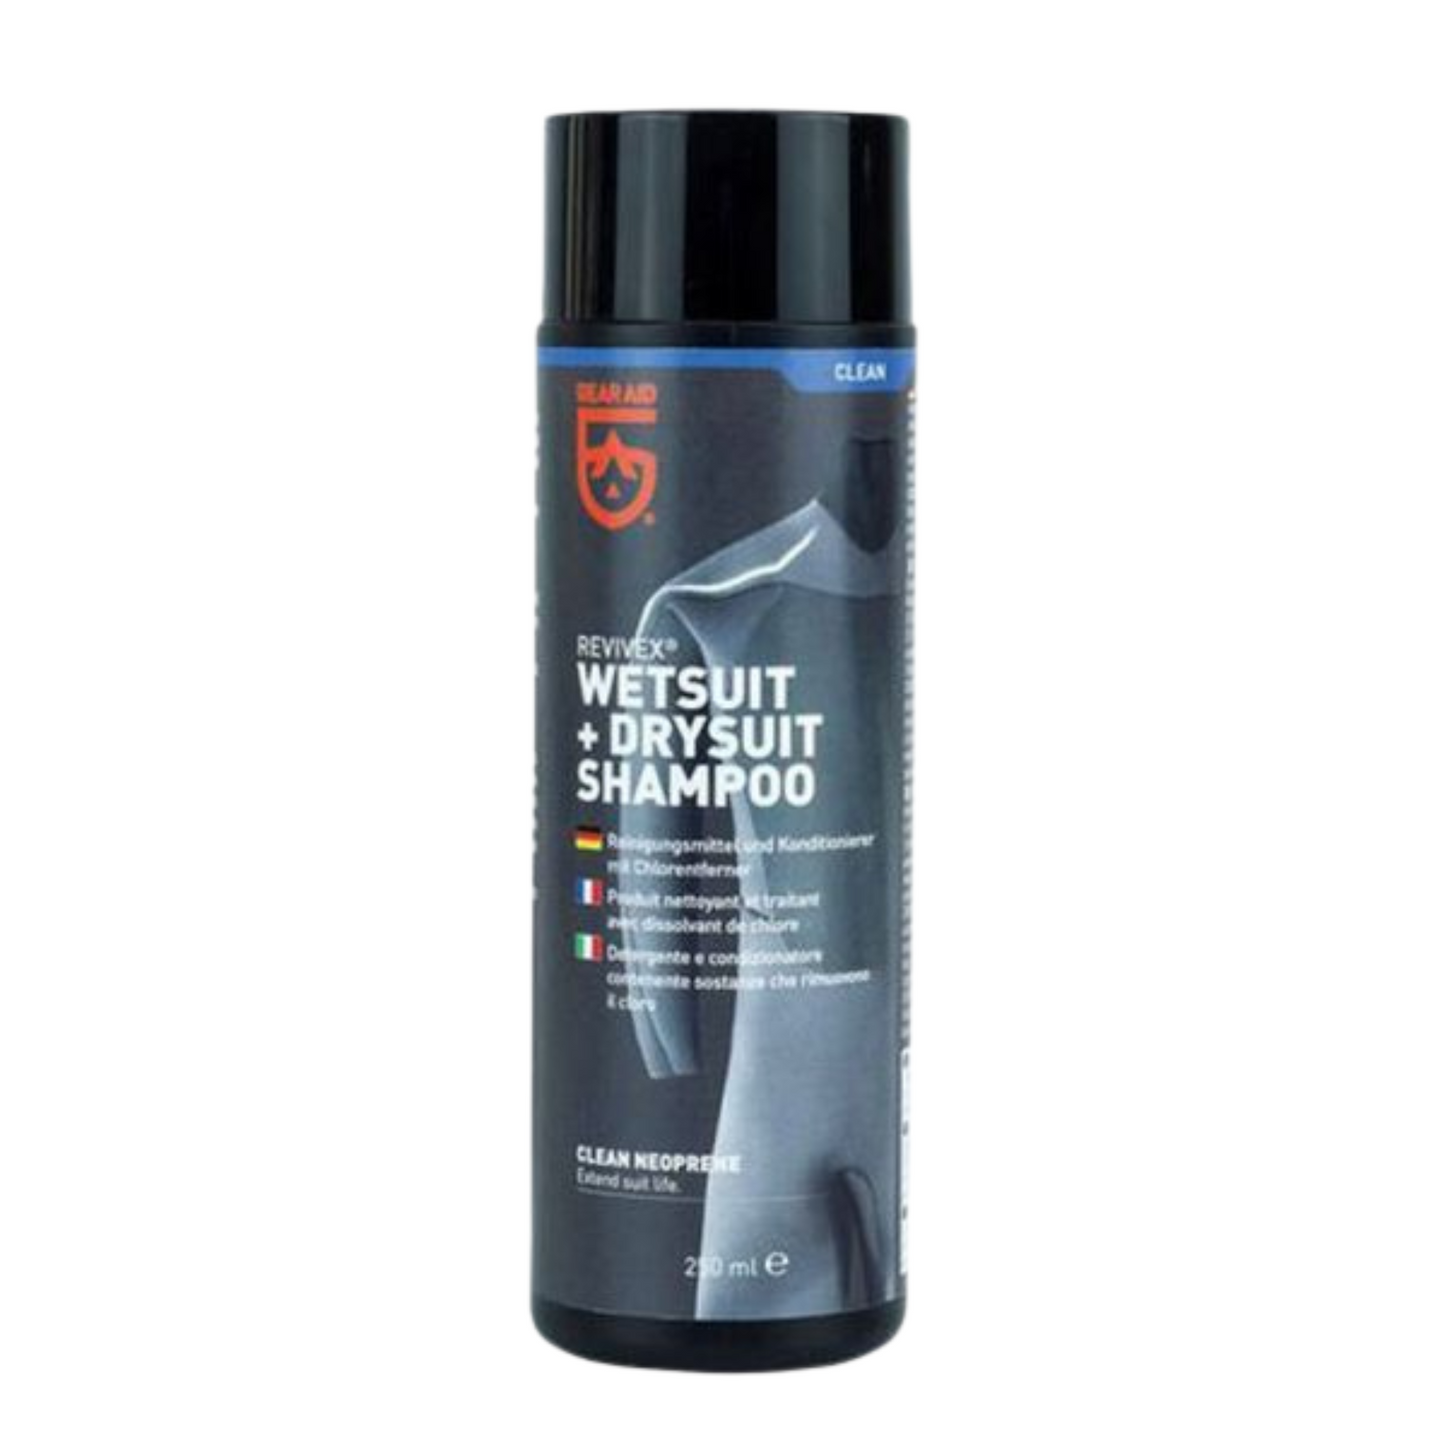 Gear Aid Revivex Wetsuit & Drysuit Shampoo 250ml